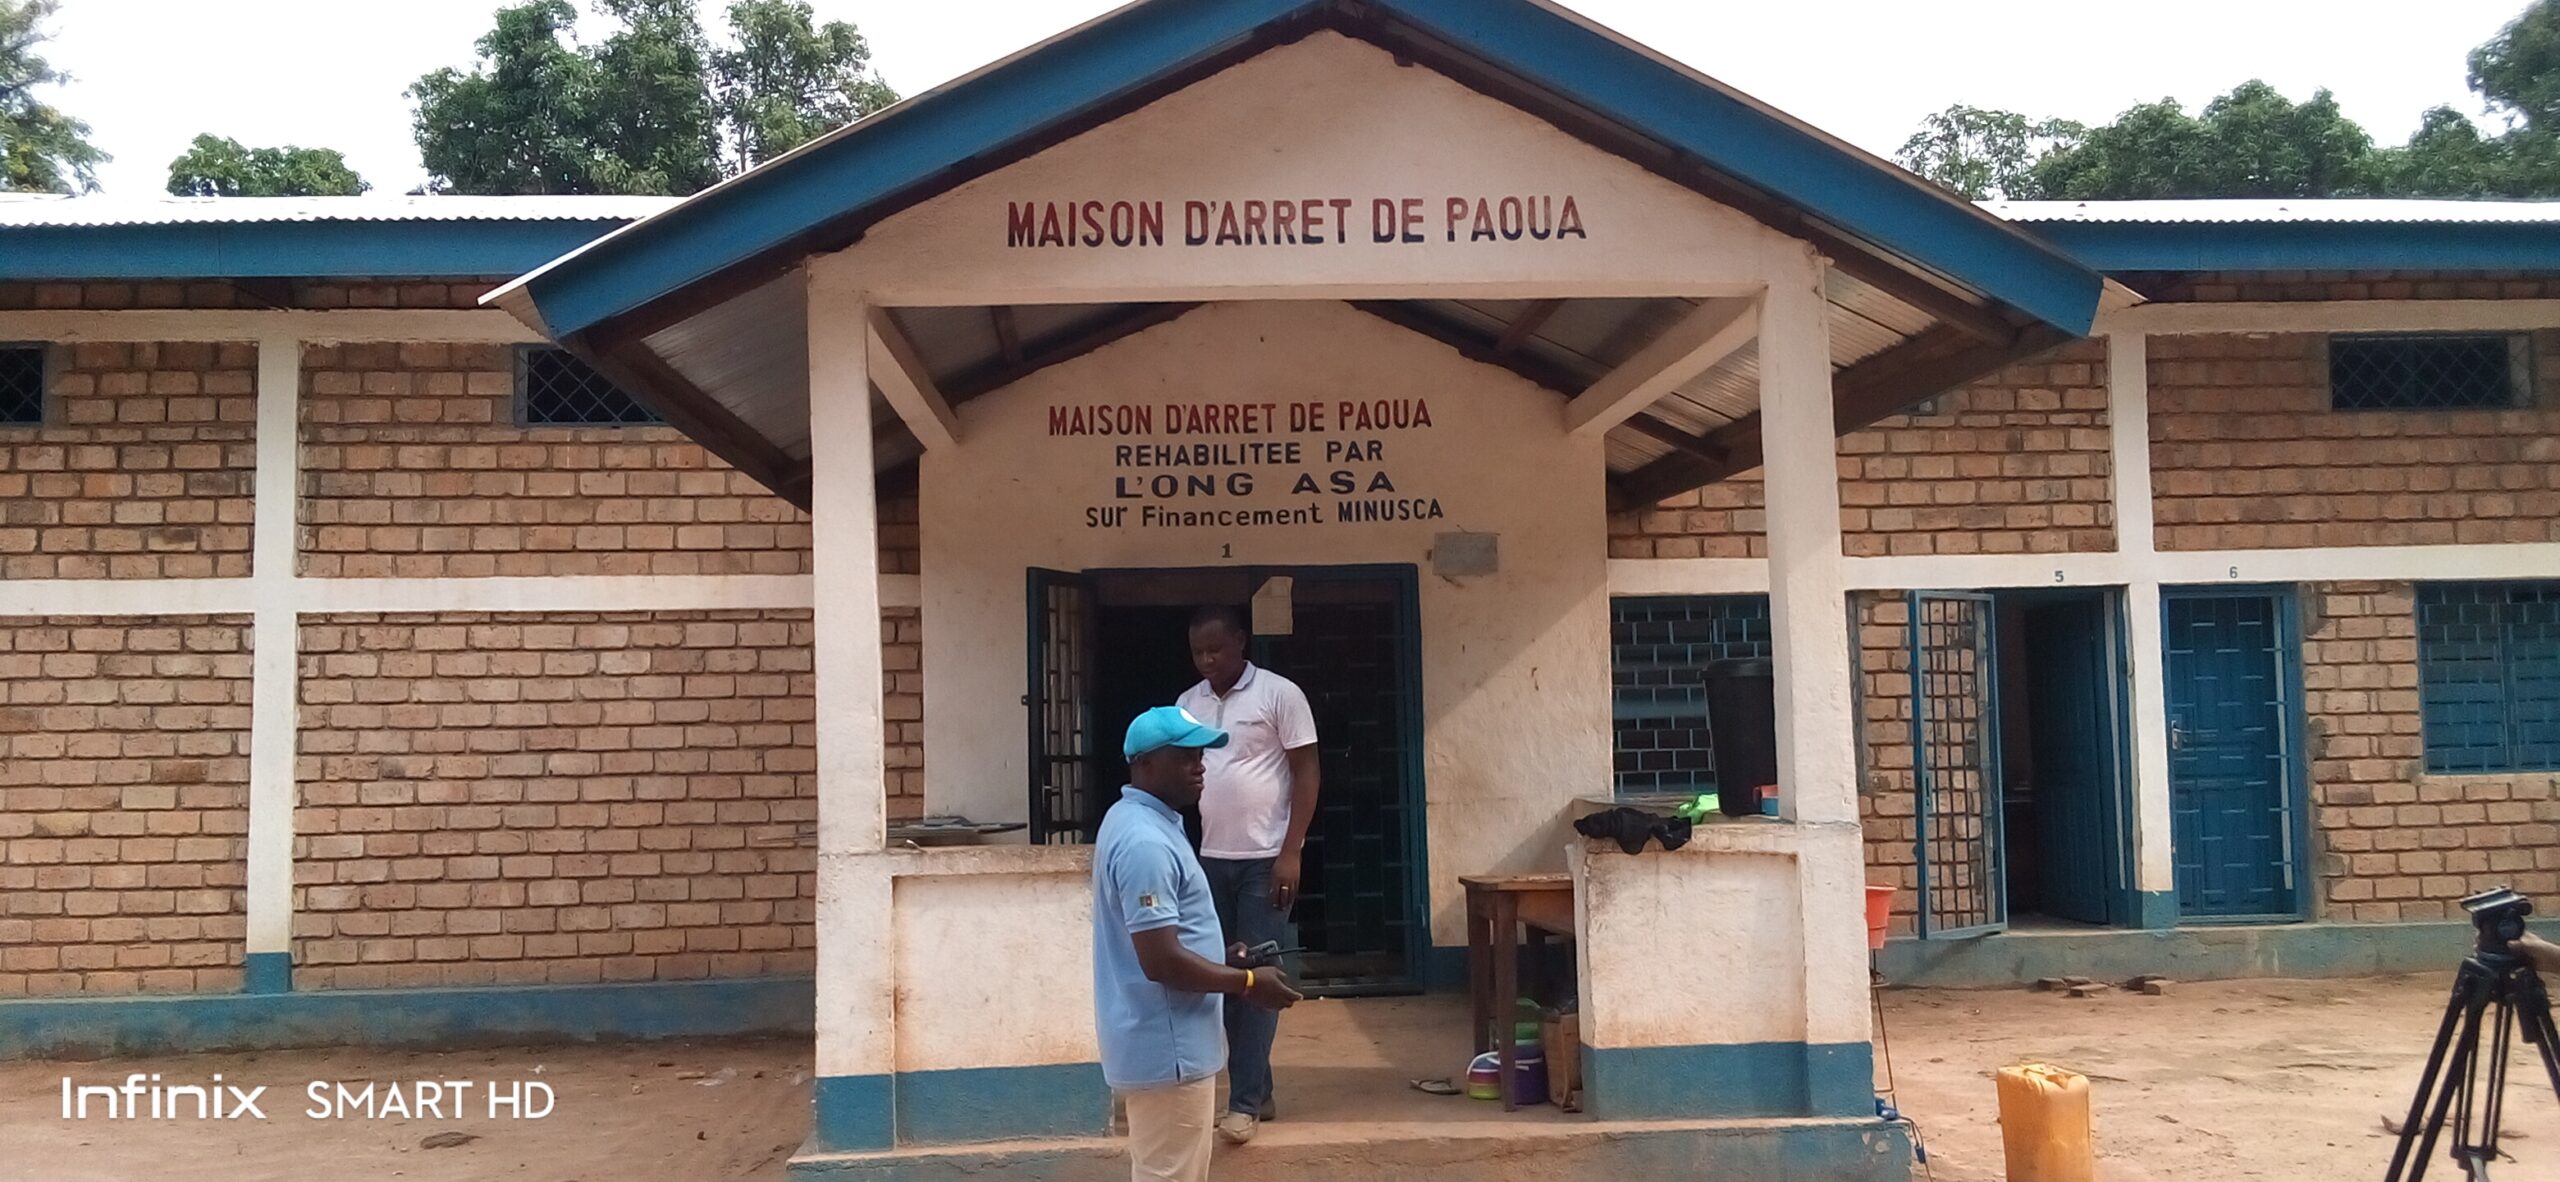 Centrafrique : plusieurs personnes inculpées à la maison d’arrêt de Paoua sans jugement après les procédures engagées par le parquet de la ville